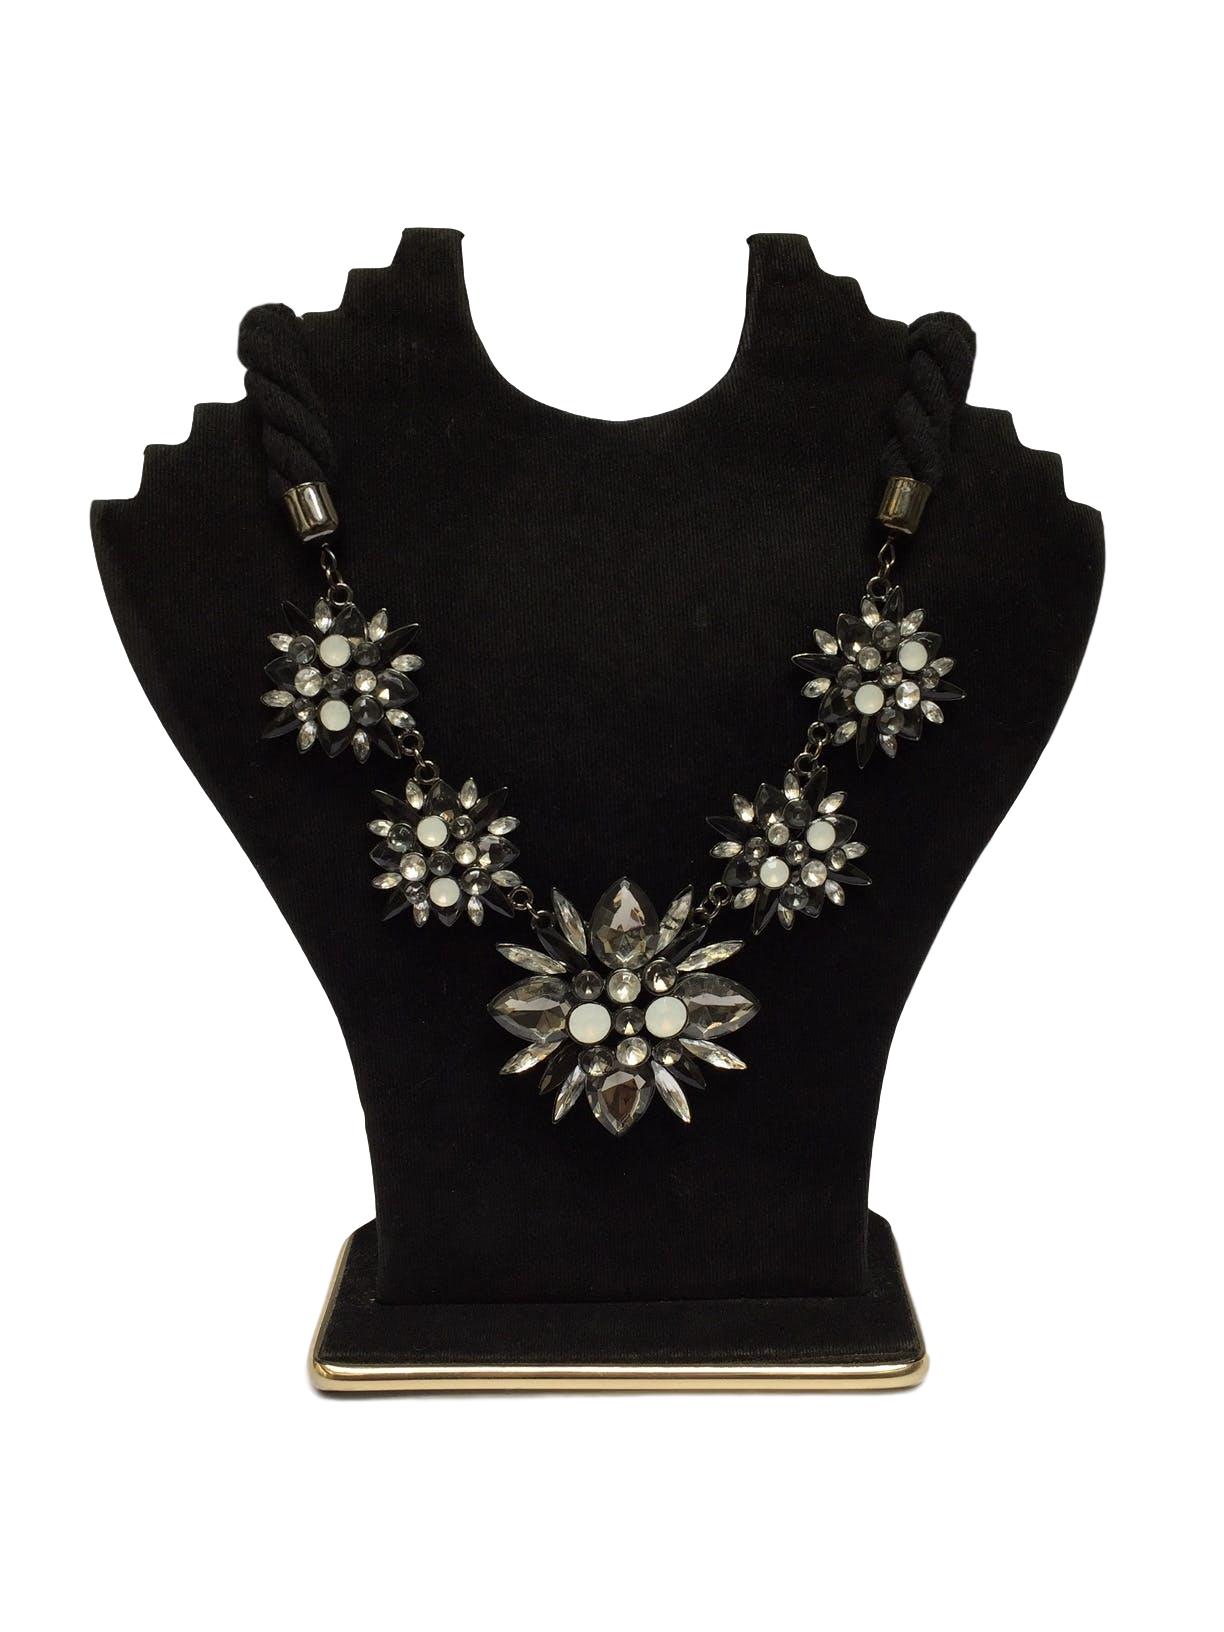 Collar de tela trenzada con flores metálicas negras y blancas, aplicaciones tipo diamante